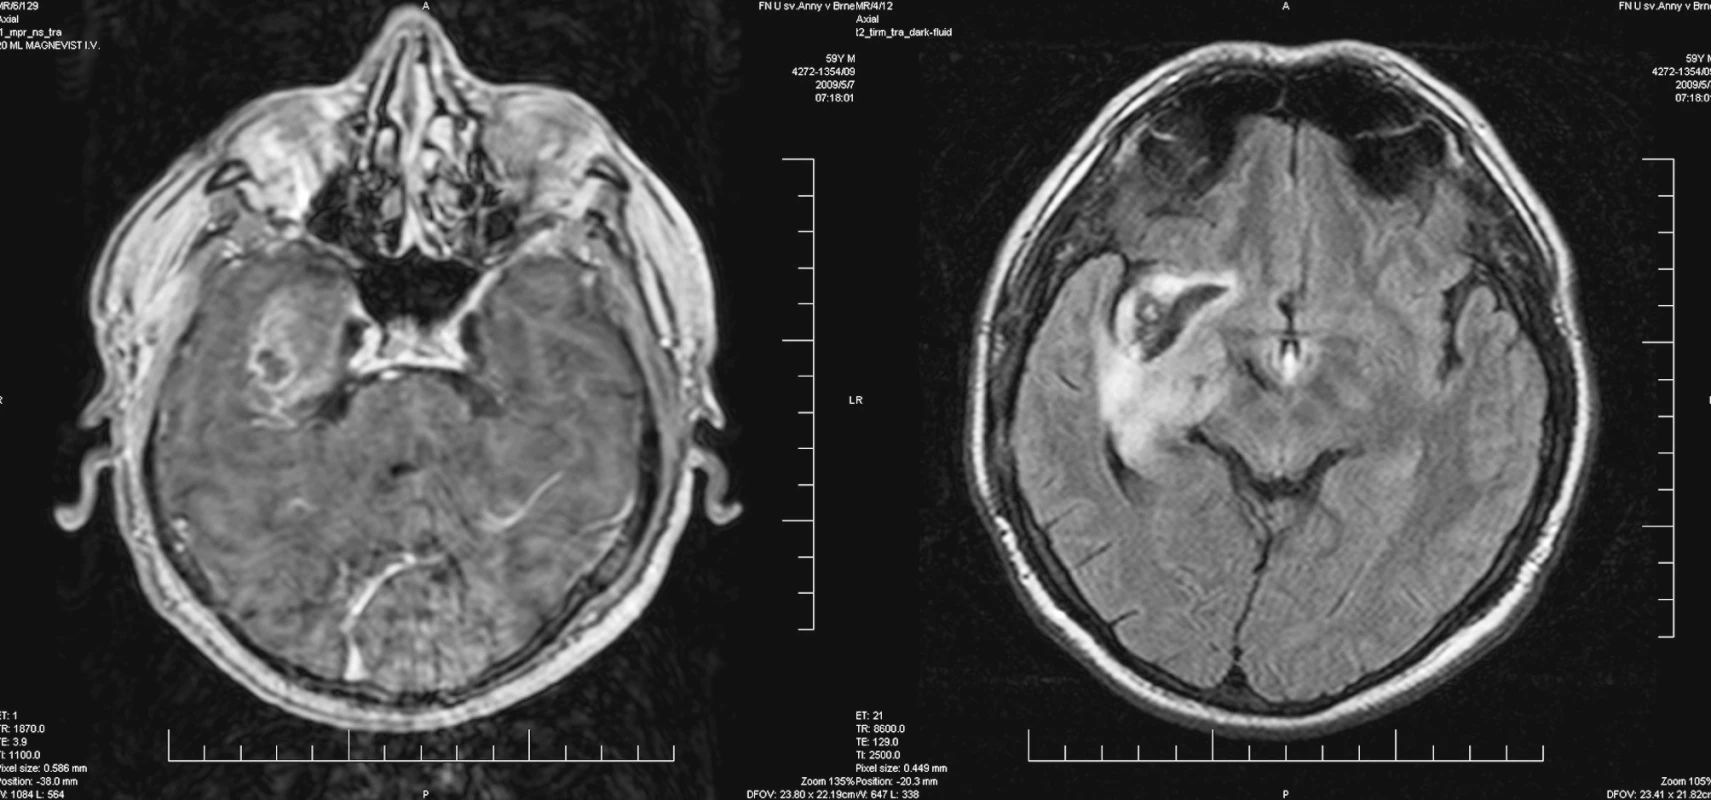 Vyšetření MRI – průkaz sytící se nádorové tkáně na bázi temporálního laloku (vlevo), další ložisko prokrvácení v oblasti inzuly
Pic. 4. MRI – enhancing tumor tissue affecting temporal lobe base (left picture), another bleeding focus affecting insula